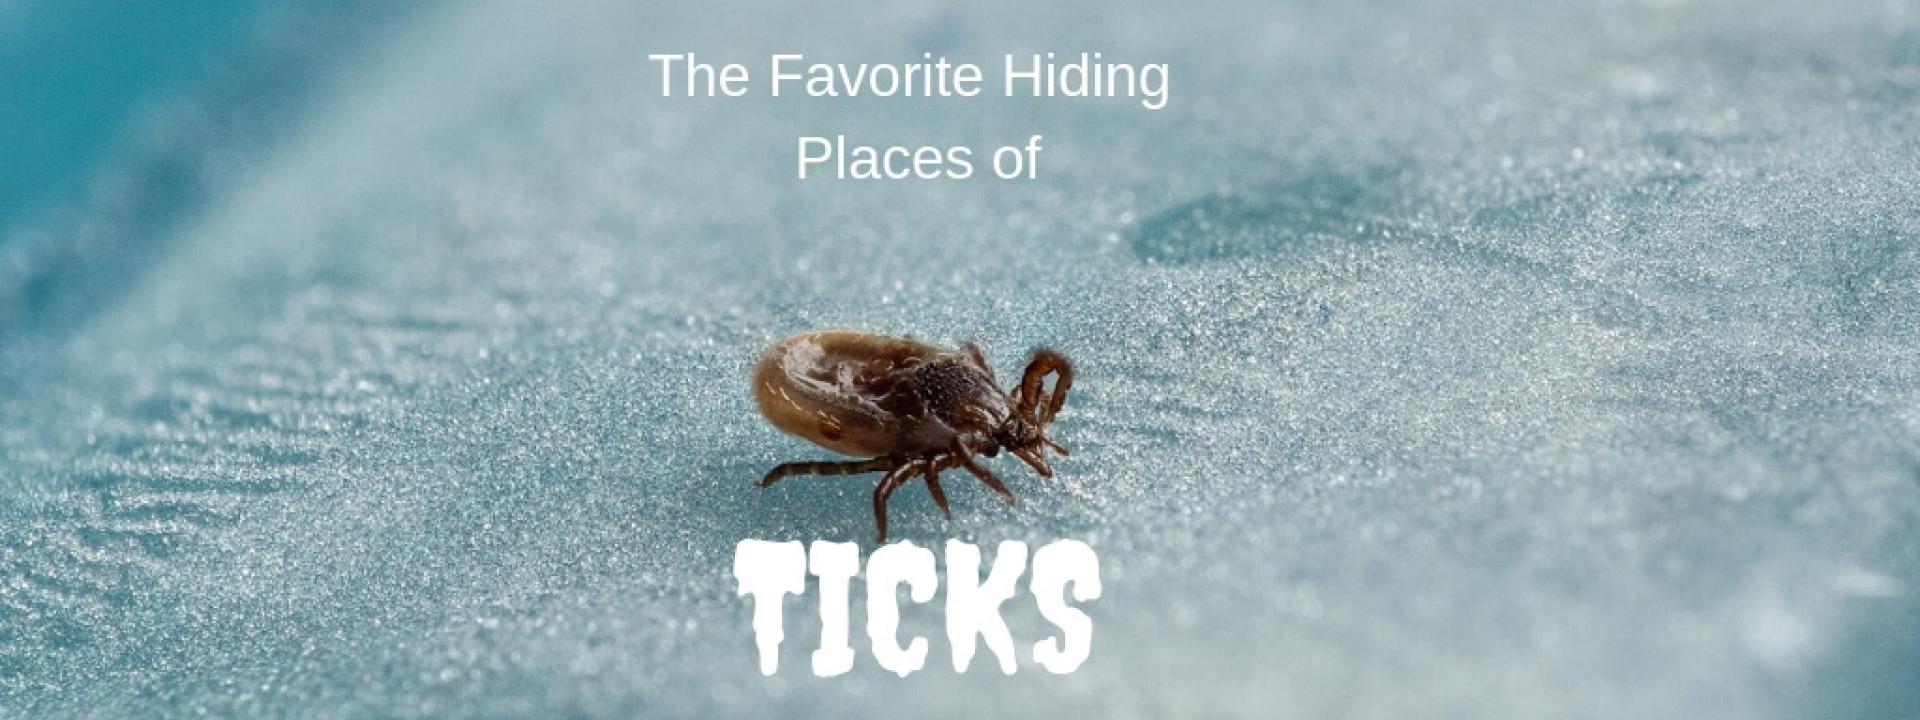 tick-hiding-blog-header.jpg